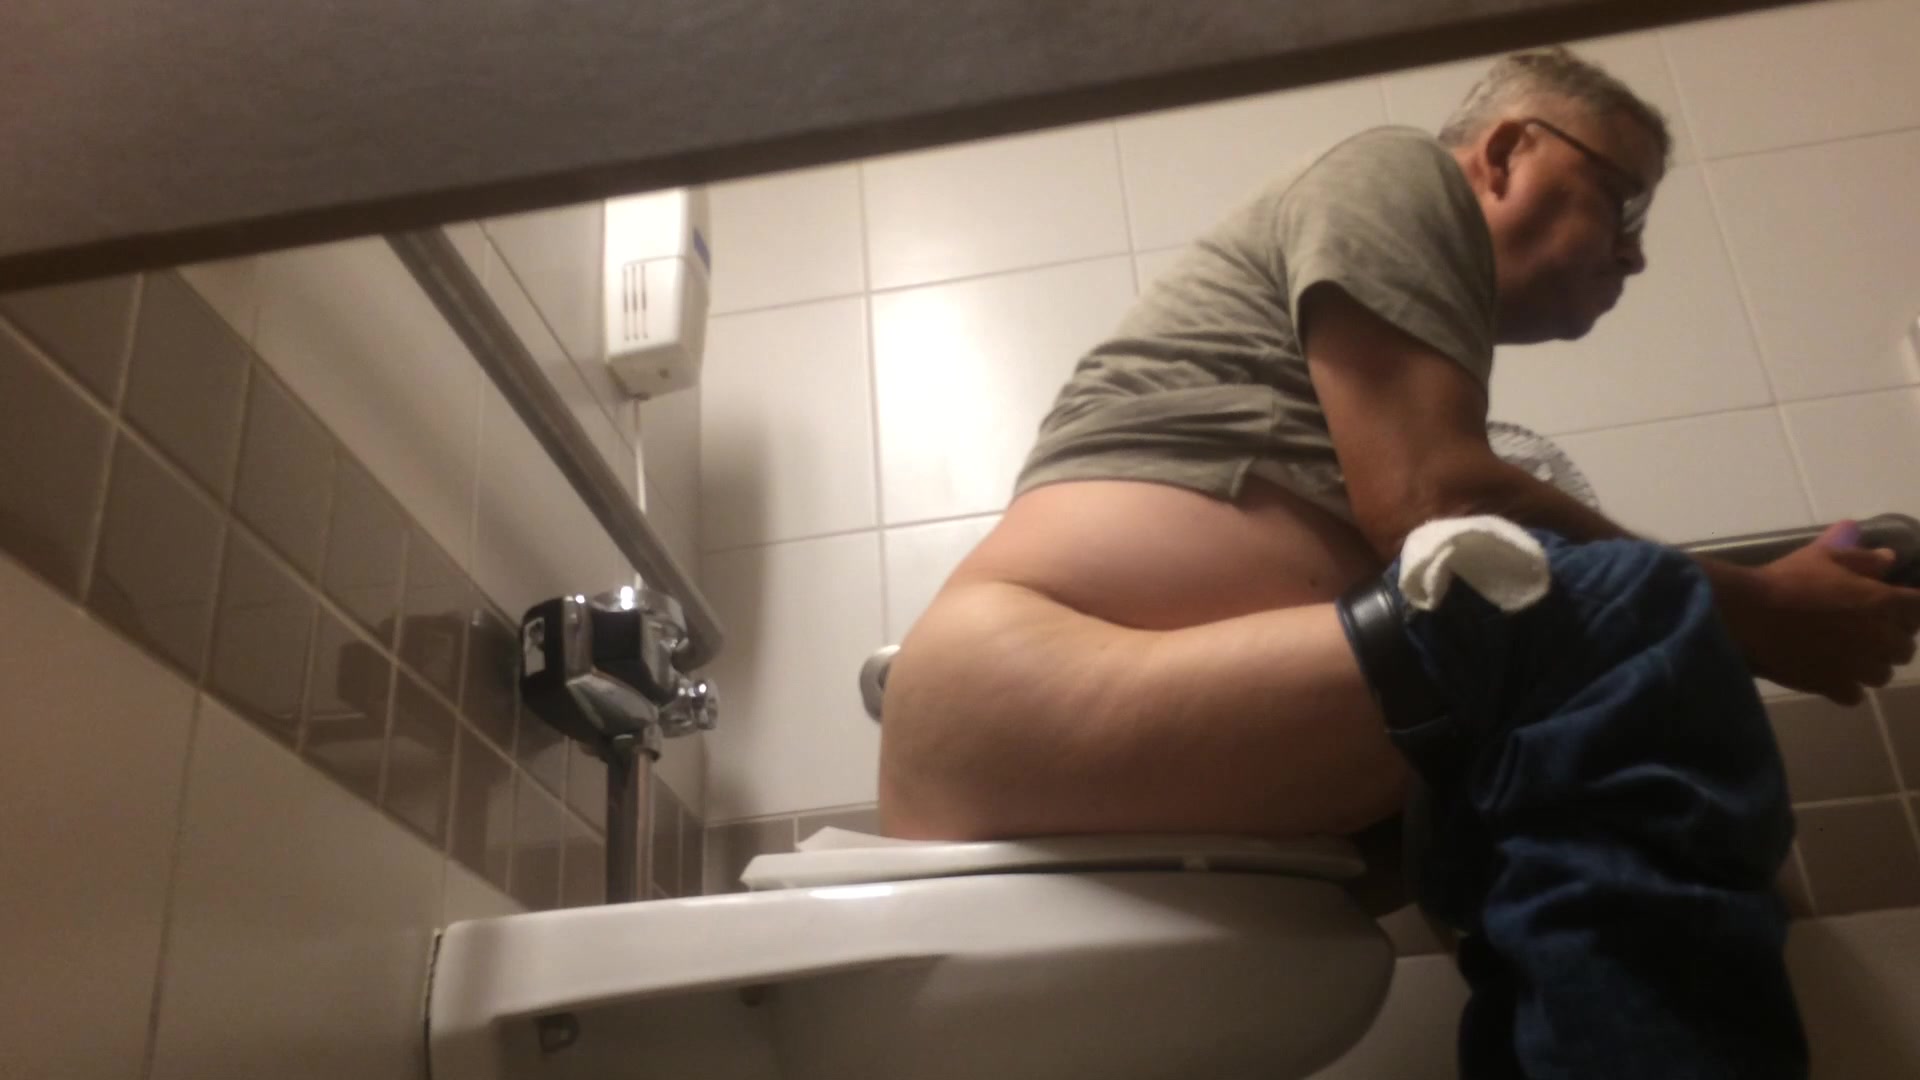 anne brownrigg share spy cam men toilet photos